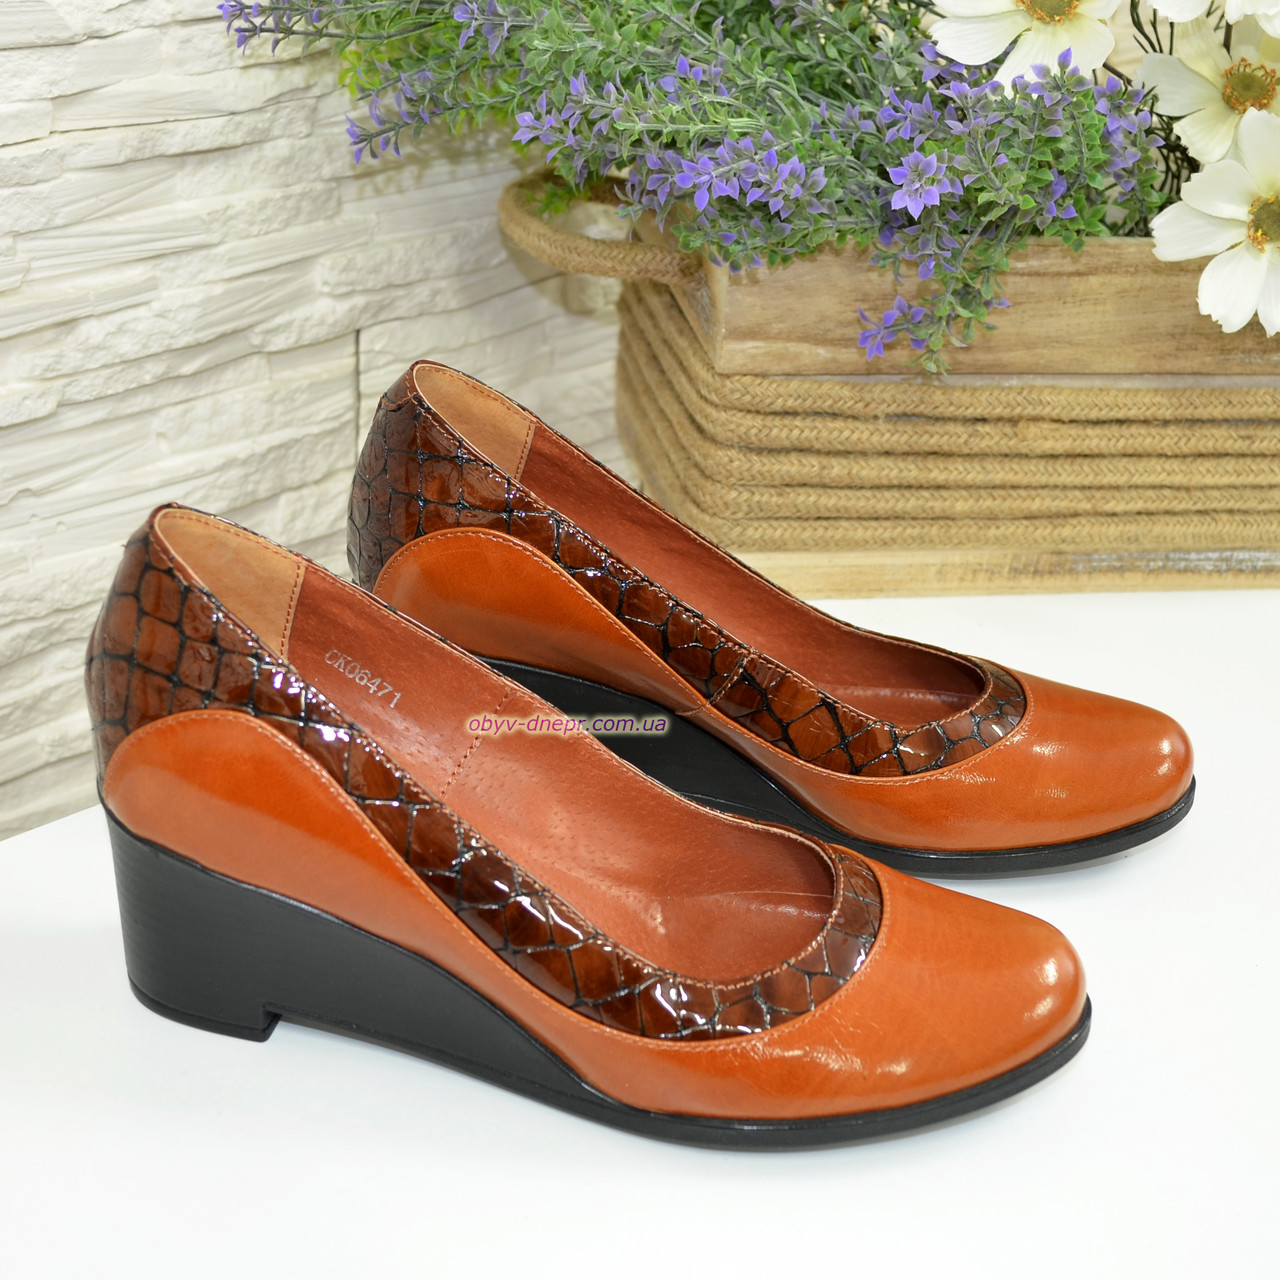 Женские коричневые классические туфли на невысокой устойчивой платформе, натуральные кожа и кожа крокодил, фото 3